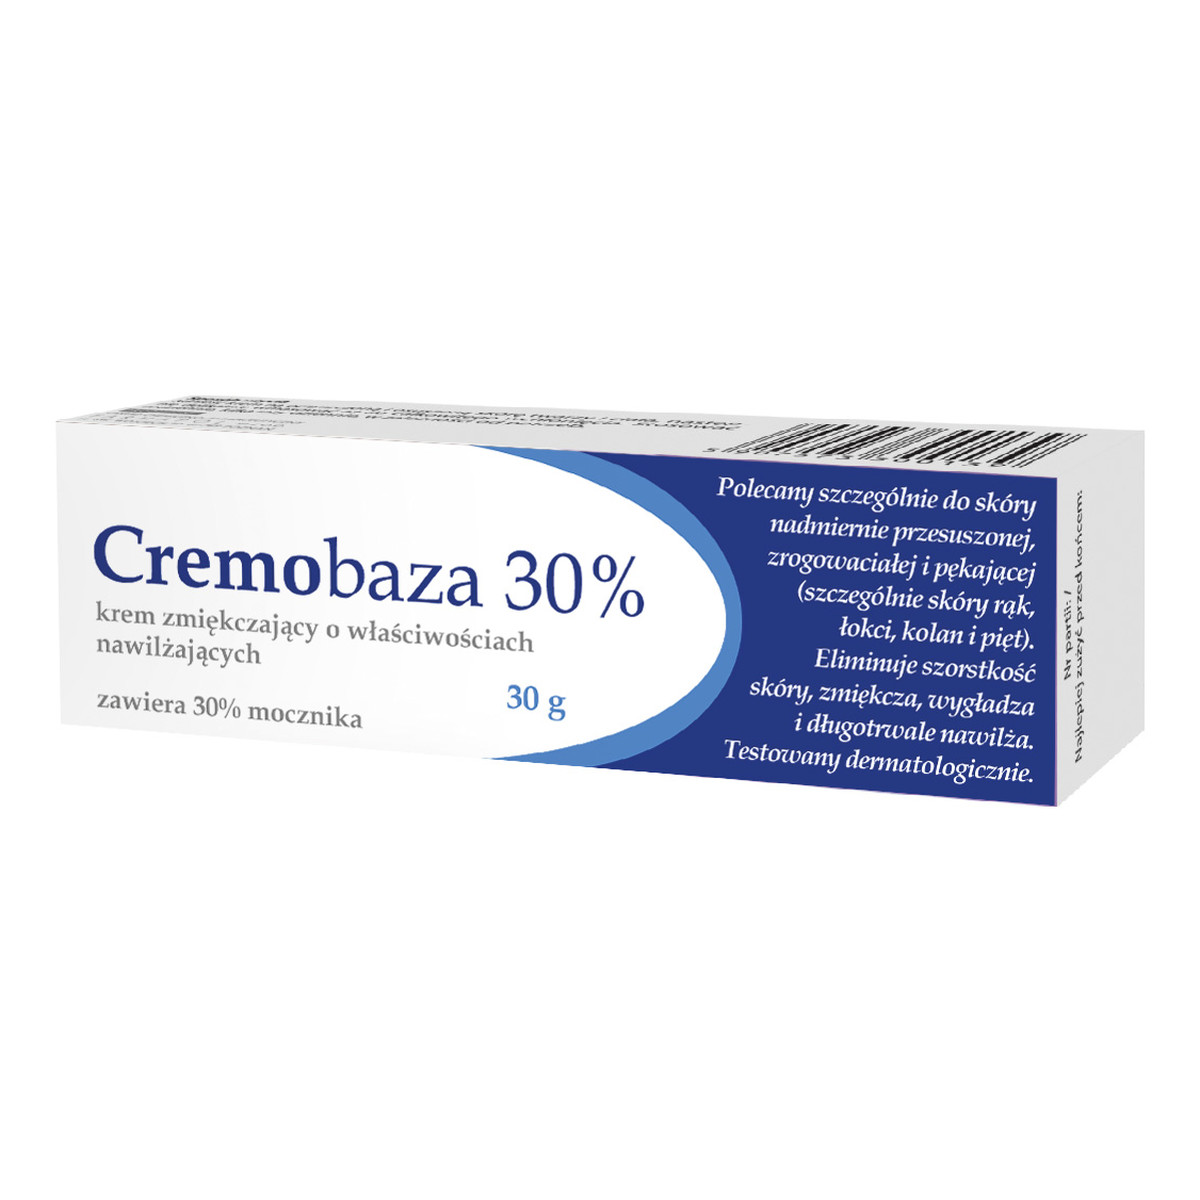 Cremobaza 30% Krem zmiękczający o właściwościach nawilżających 30g